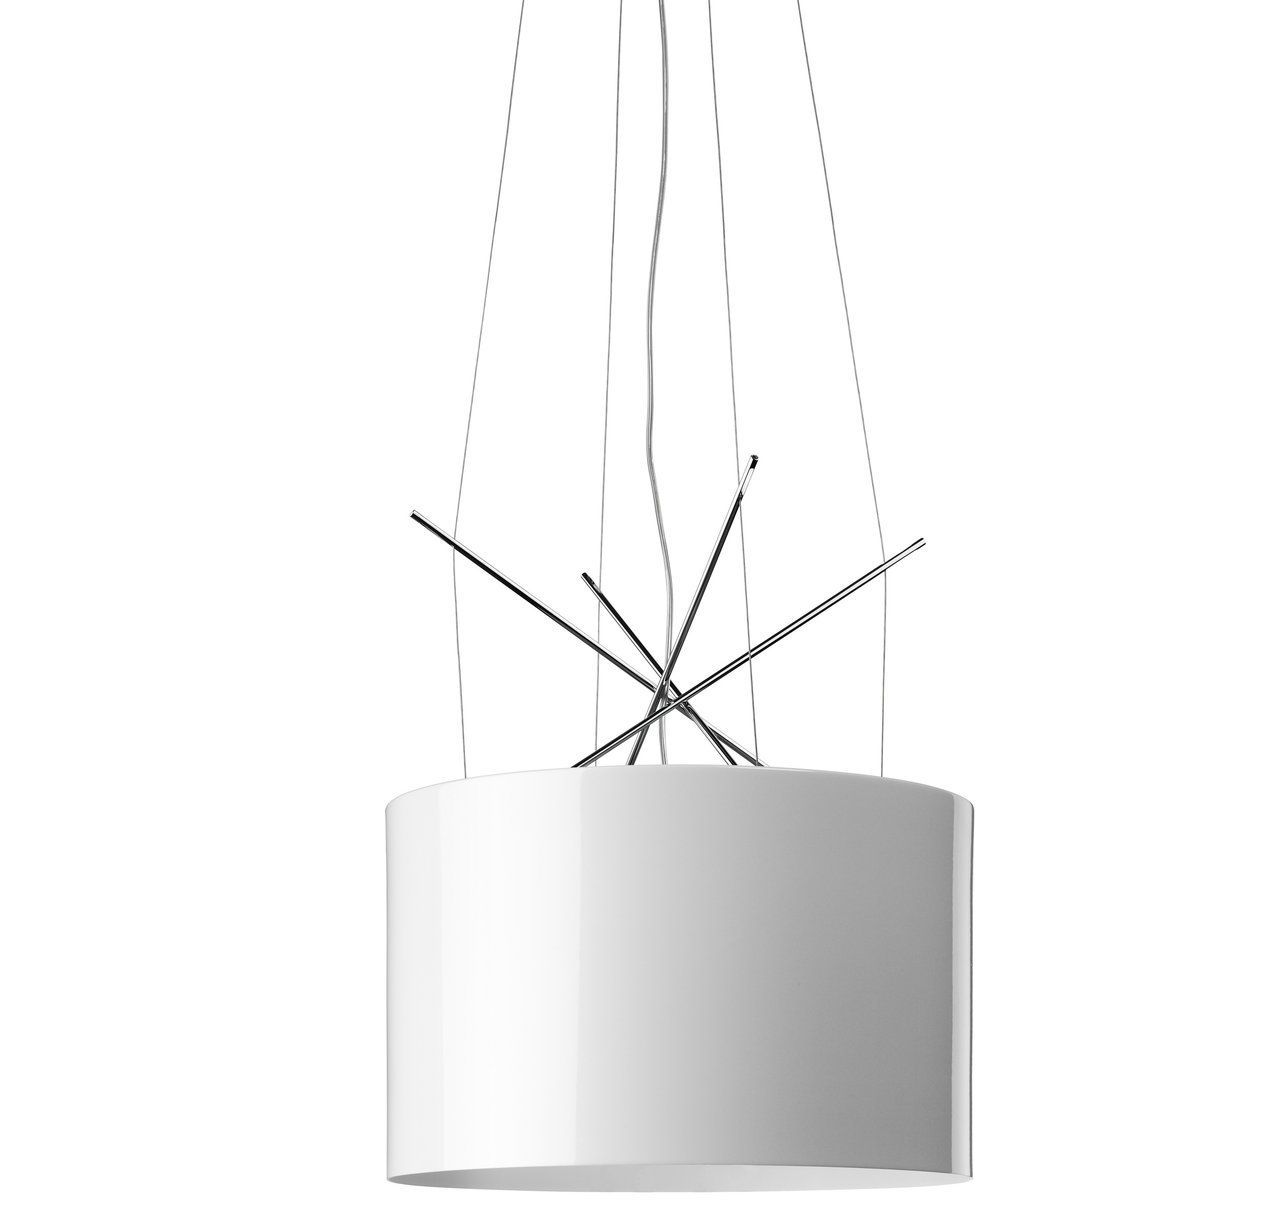 Hanging lamp RAY by Romatti